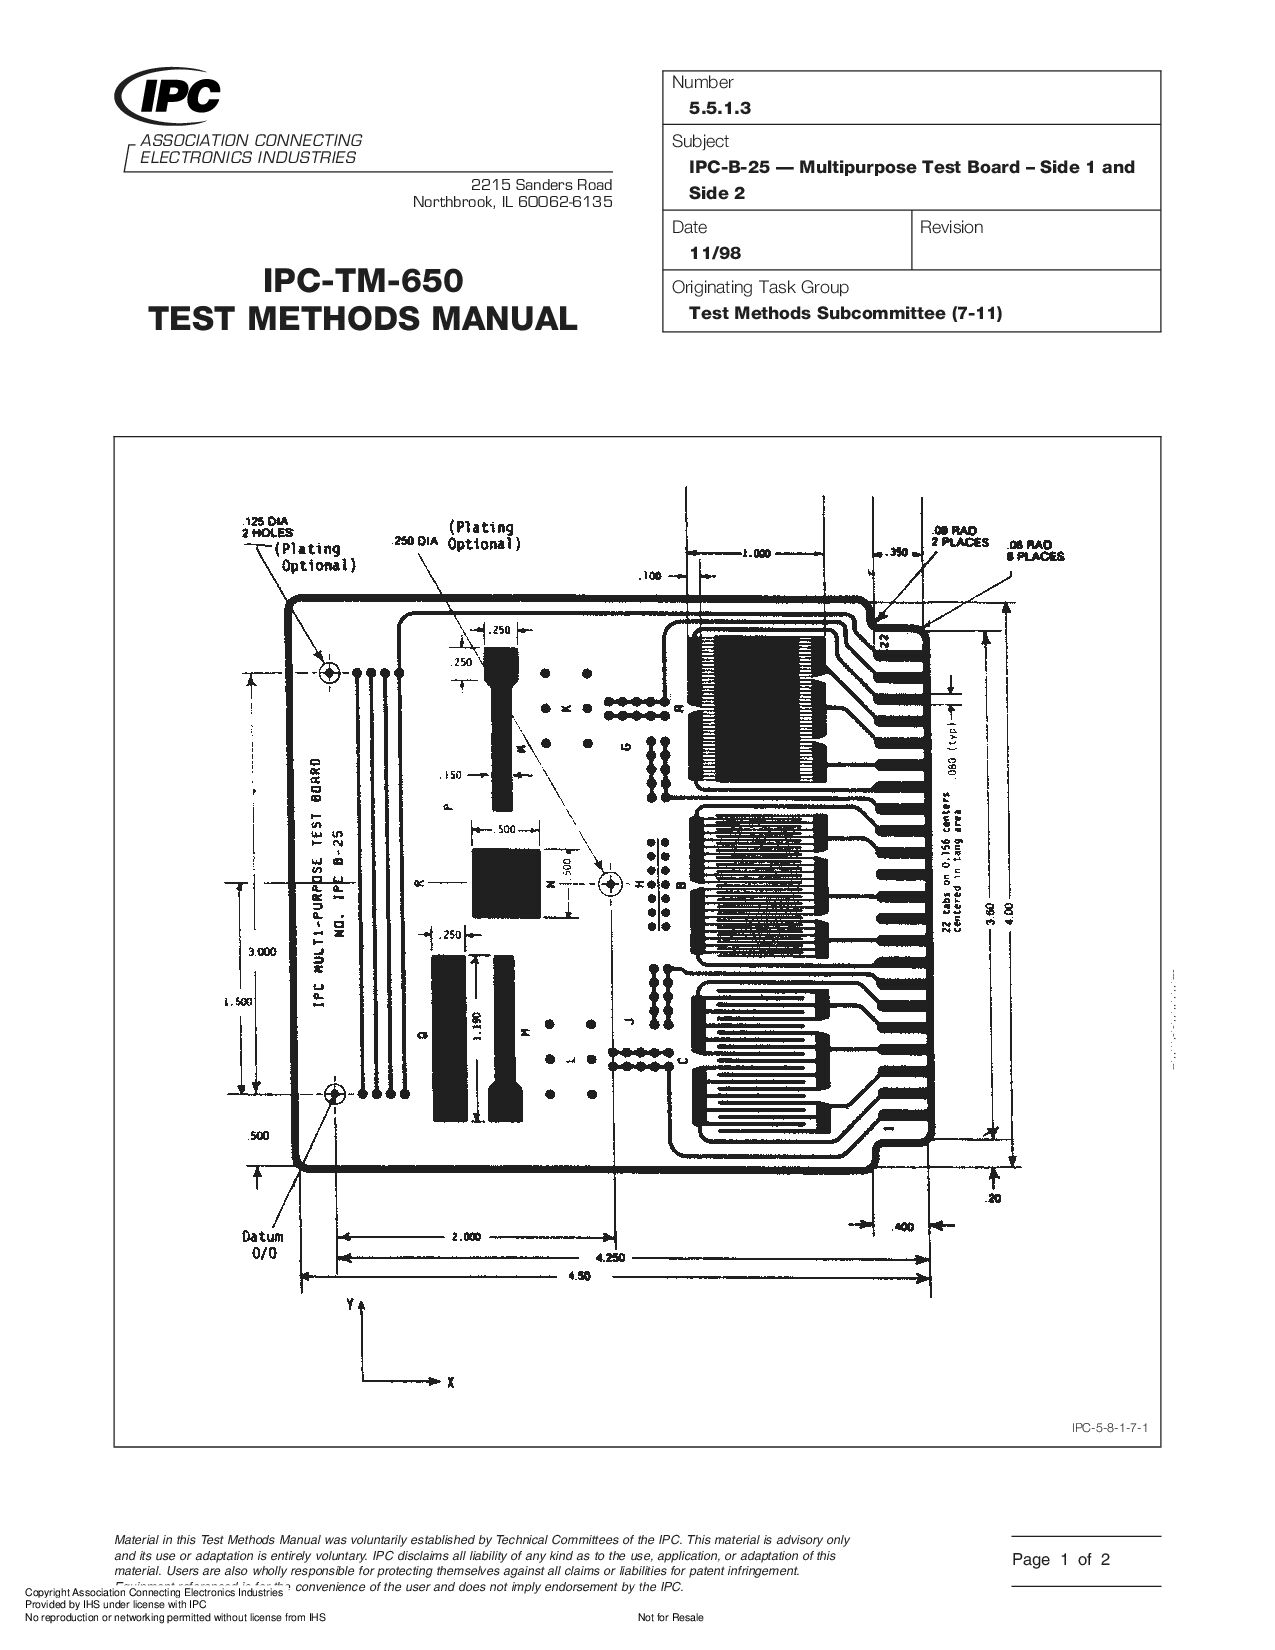 IPC TM-650 5.5.1.3-1998